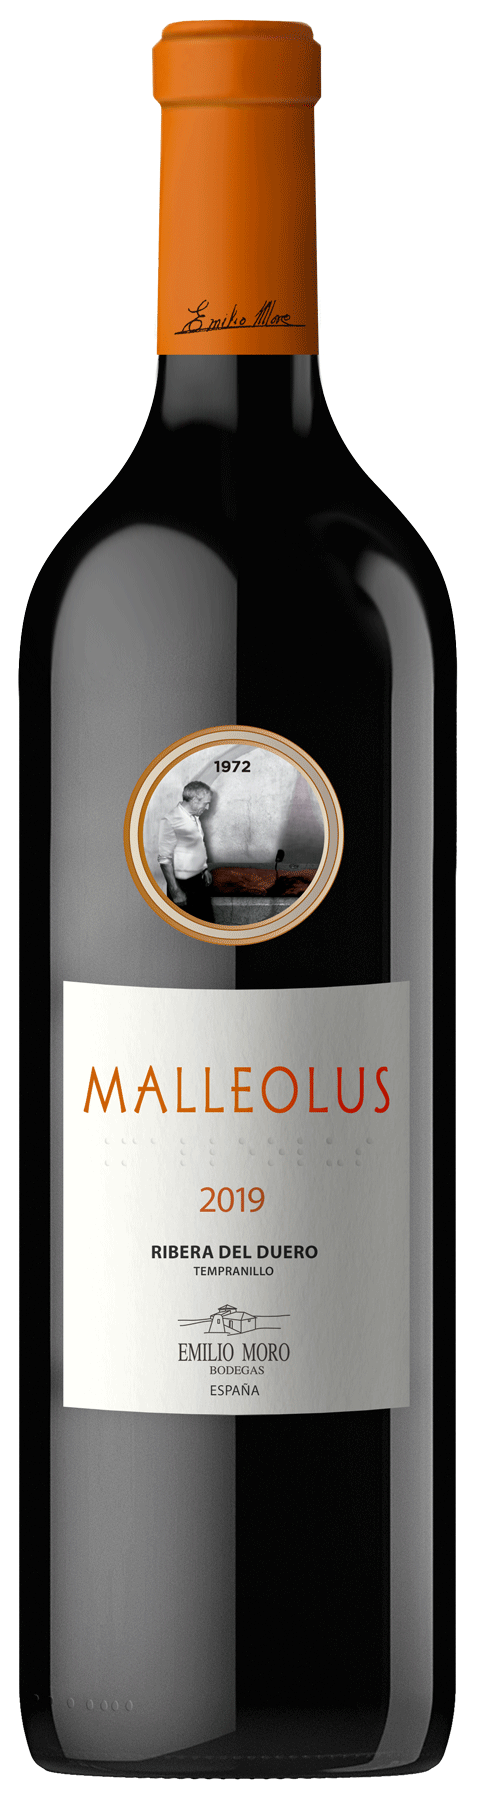 Malleolus - Emilio Moro 2019